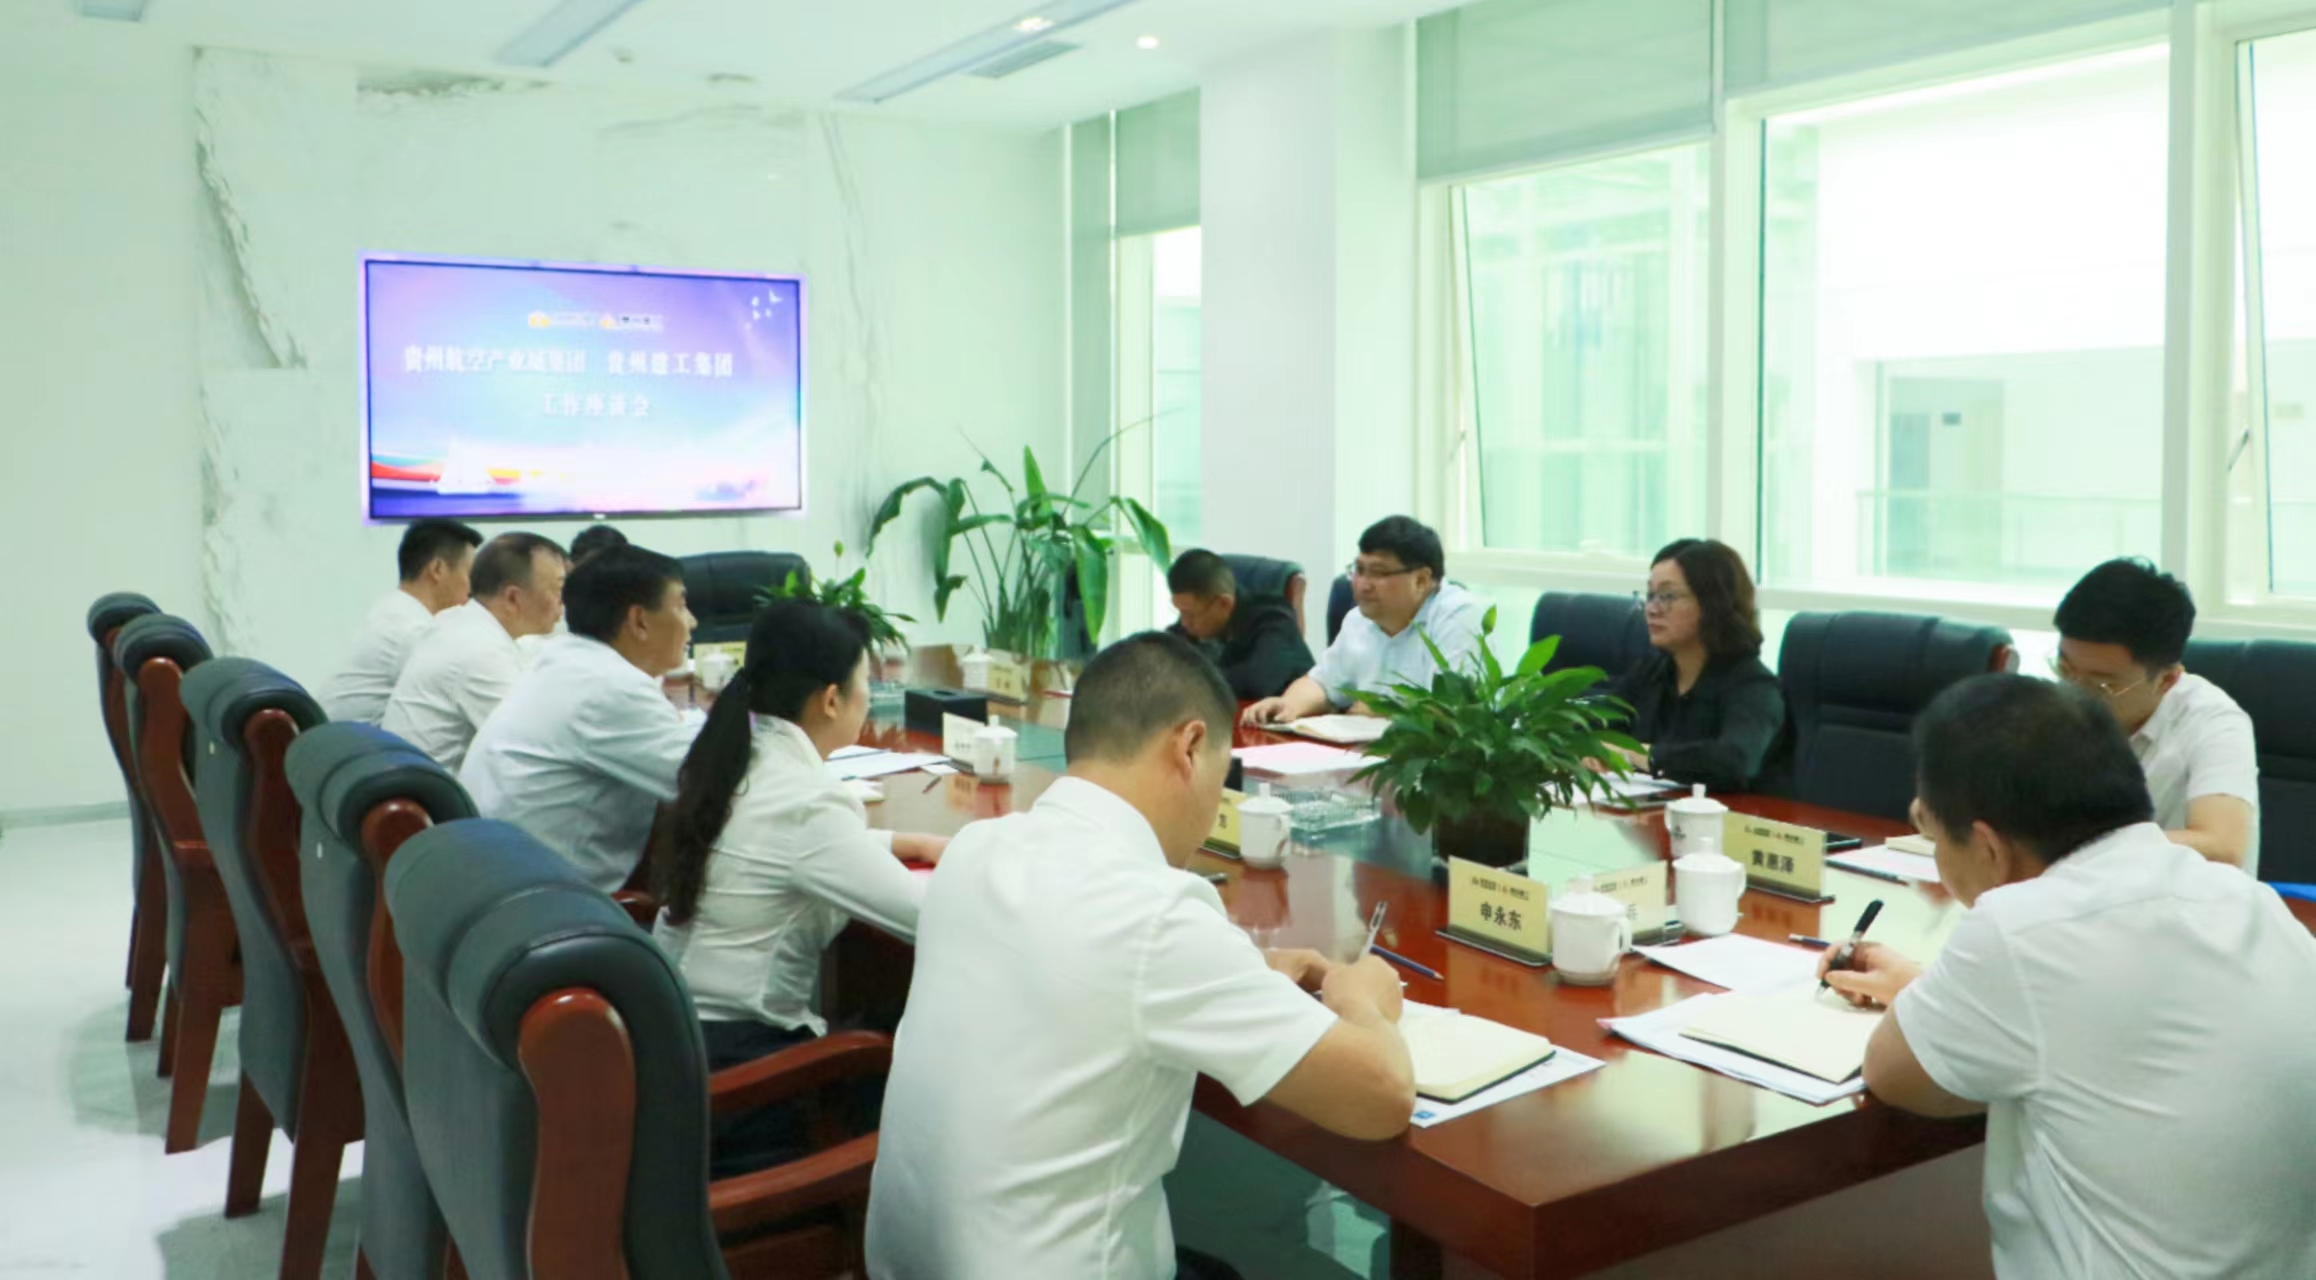  利记集团与贵州航空产业城集团举行工作座谈会